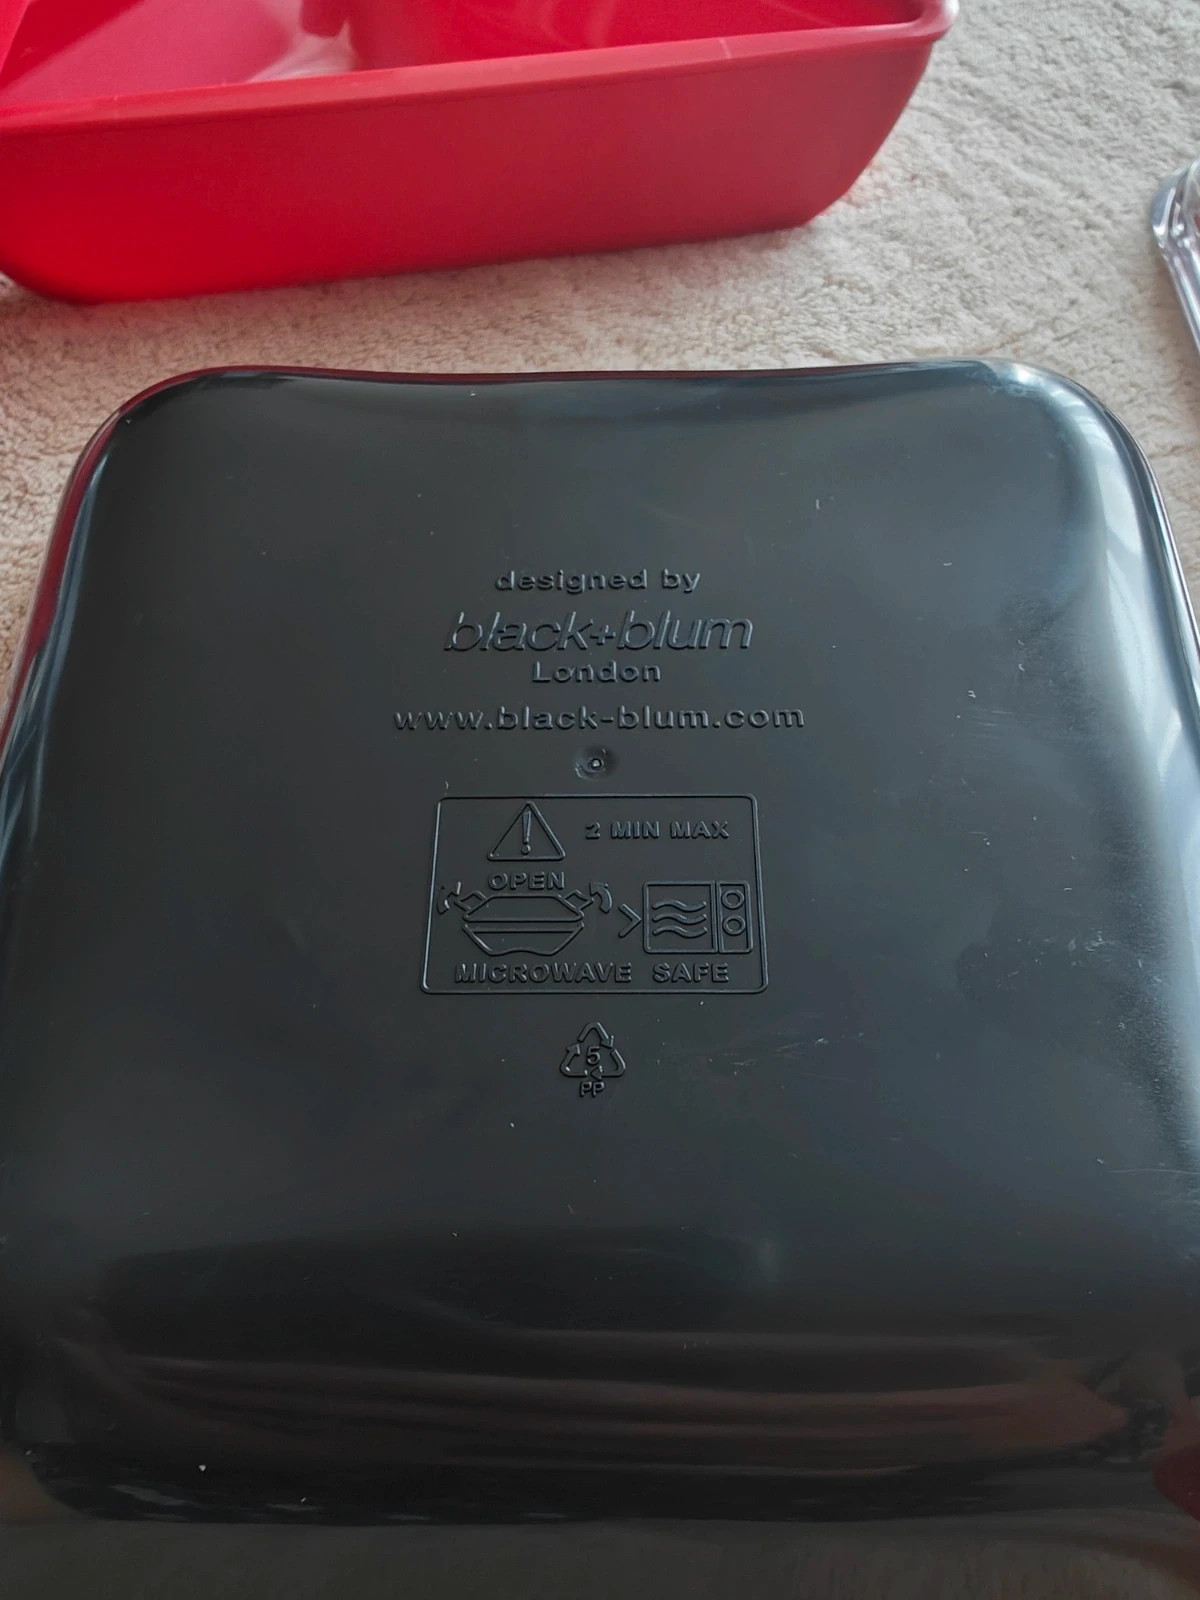 pojemnik lunch box na śniadanie lub obiad marki Black+Blum London